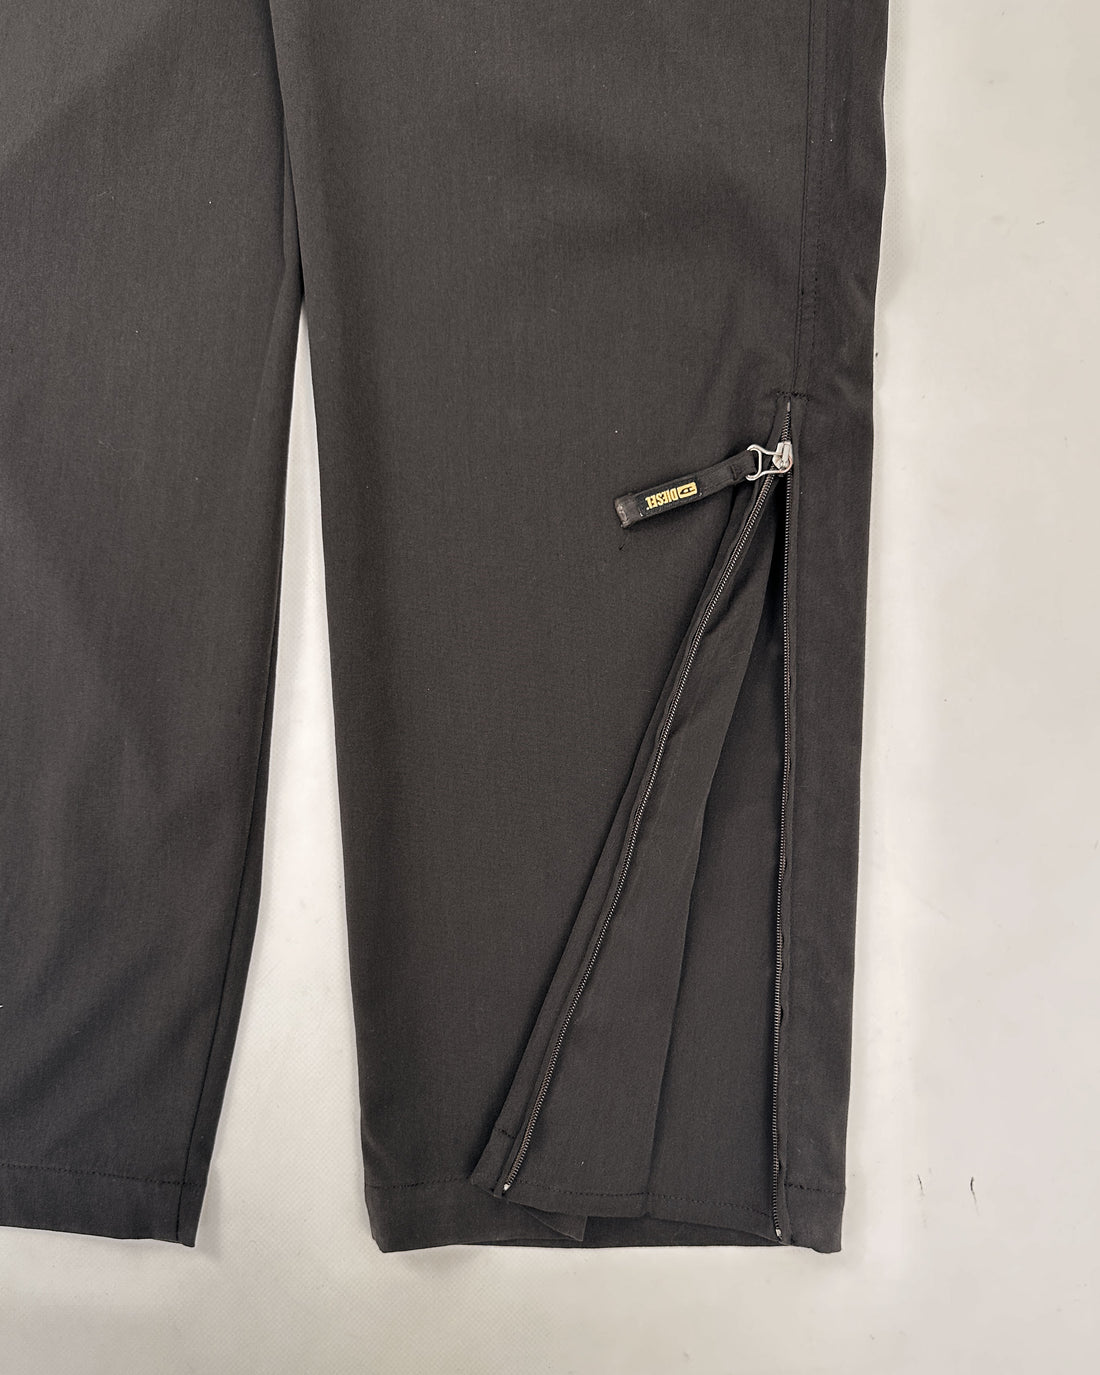 Diesel Dark Brown Zipped Pants 2000's